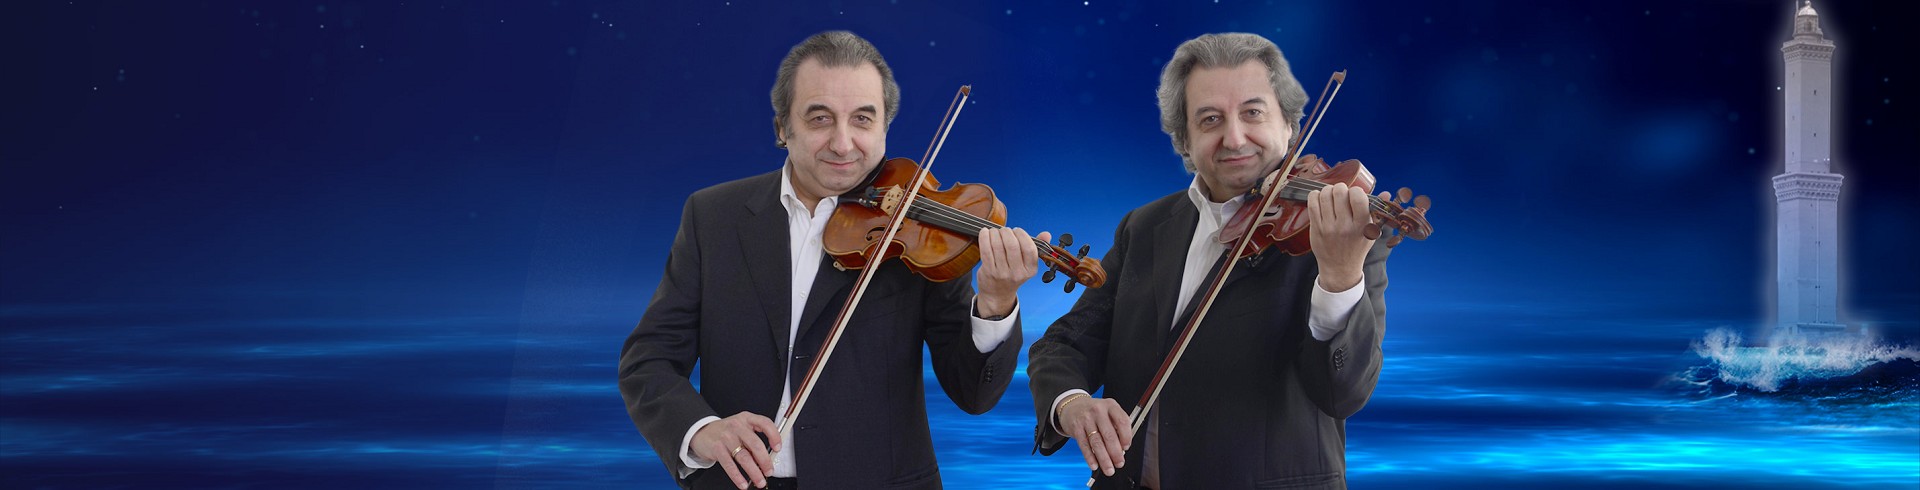 gemelli compositori melodie cover brani pezzi musicali famosi violini teatro carlo felice genova